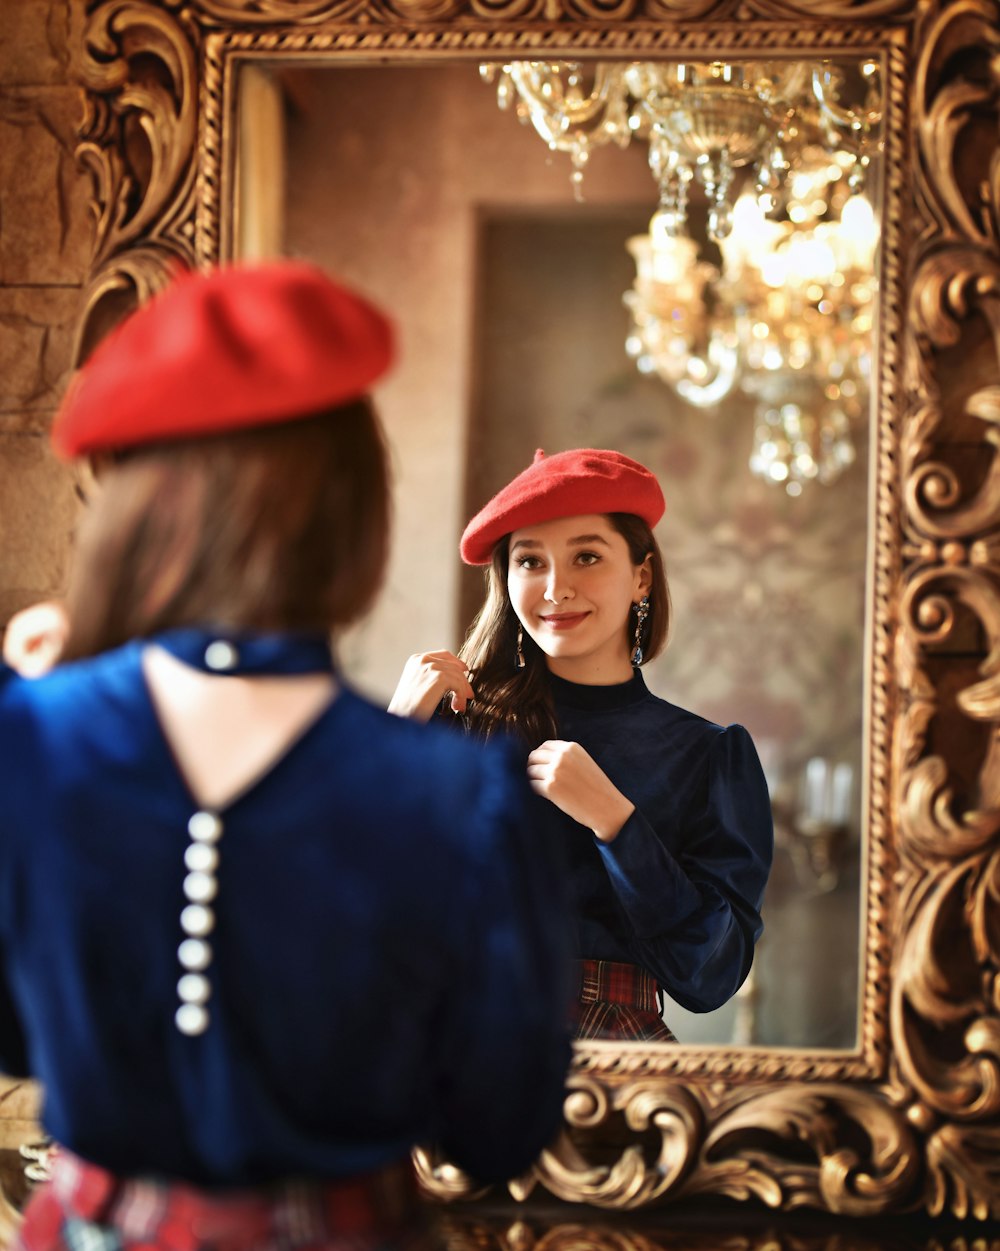 빨간 모자를 쓴 여자가 거울에 비친 자신을 보고 있다